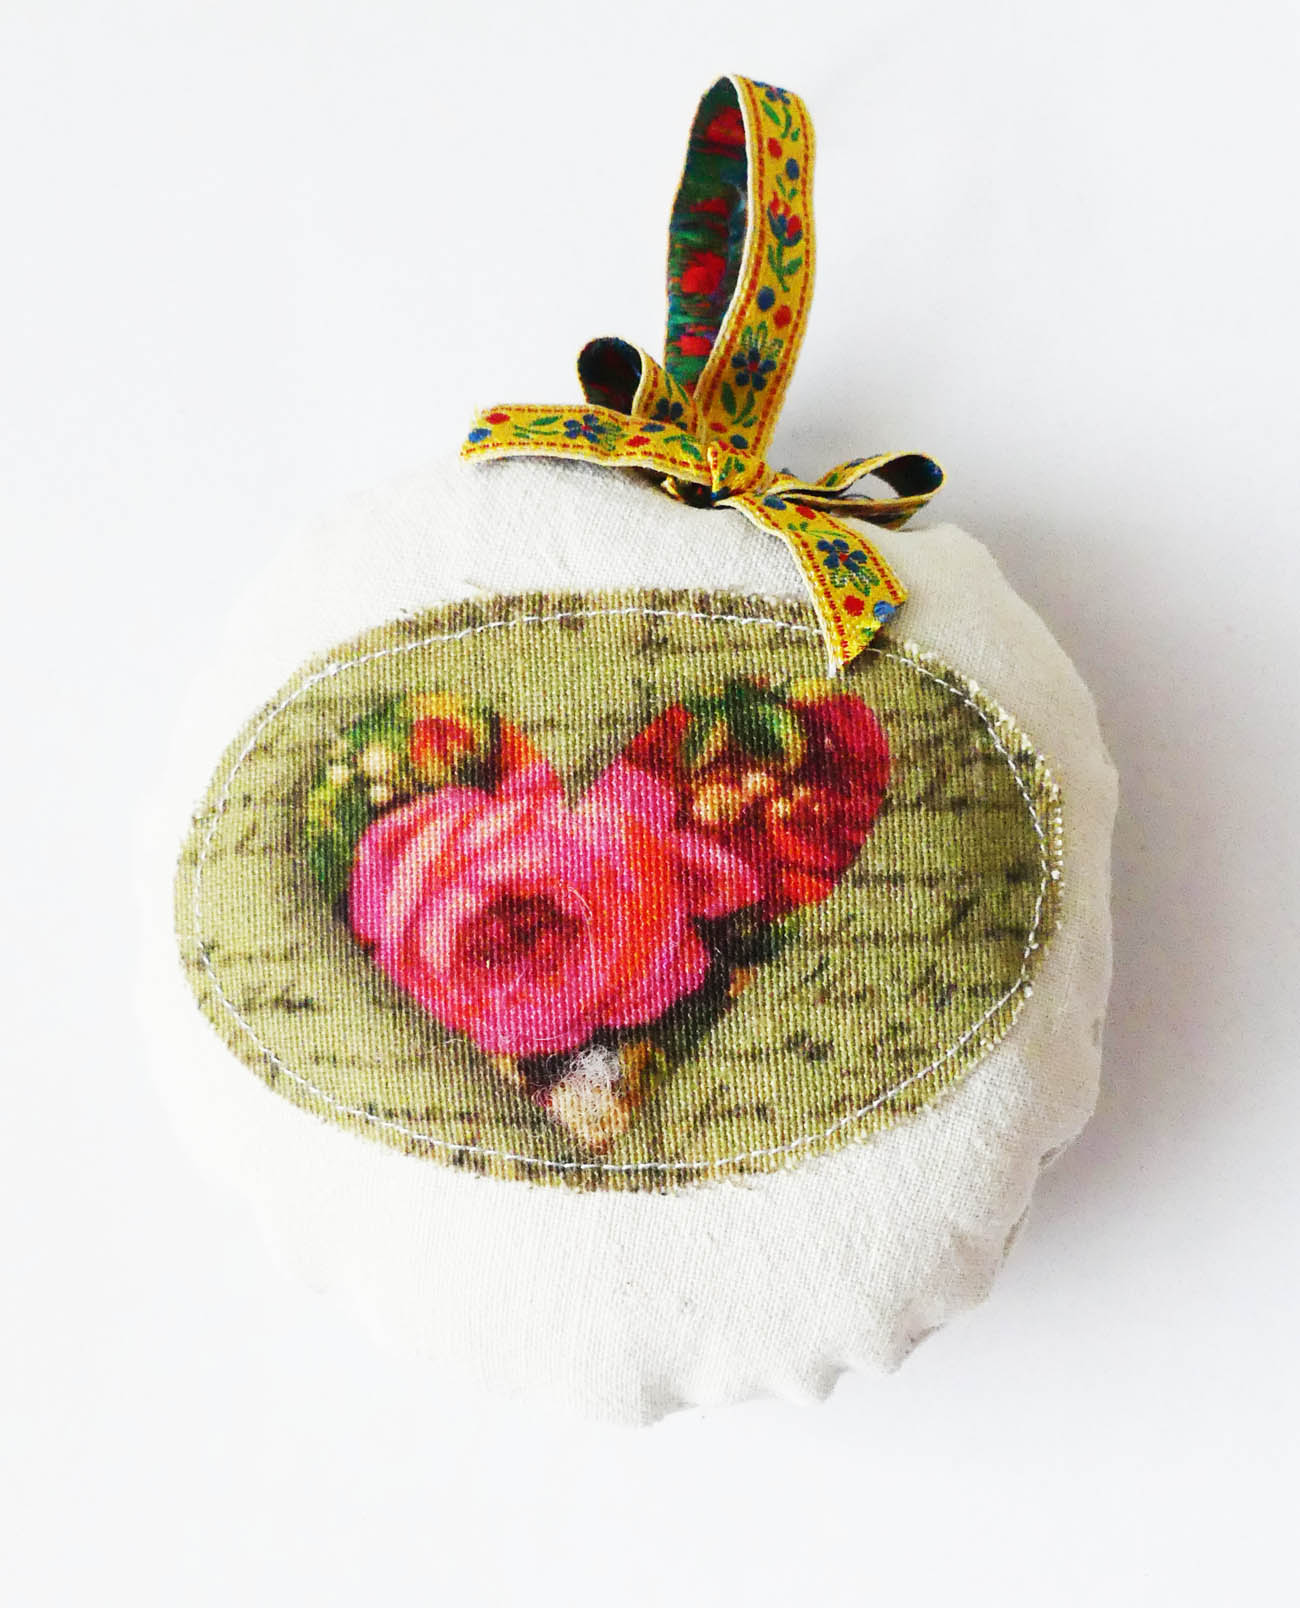 Voňavá ozdoba so srdiečkom plnená levnaduľou- šitá handmade dekorácia